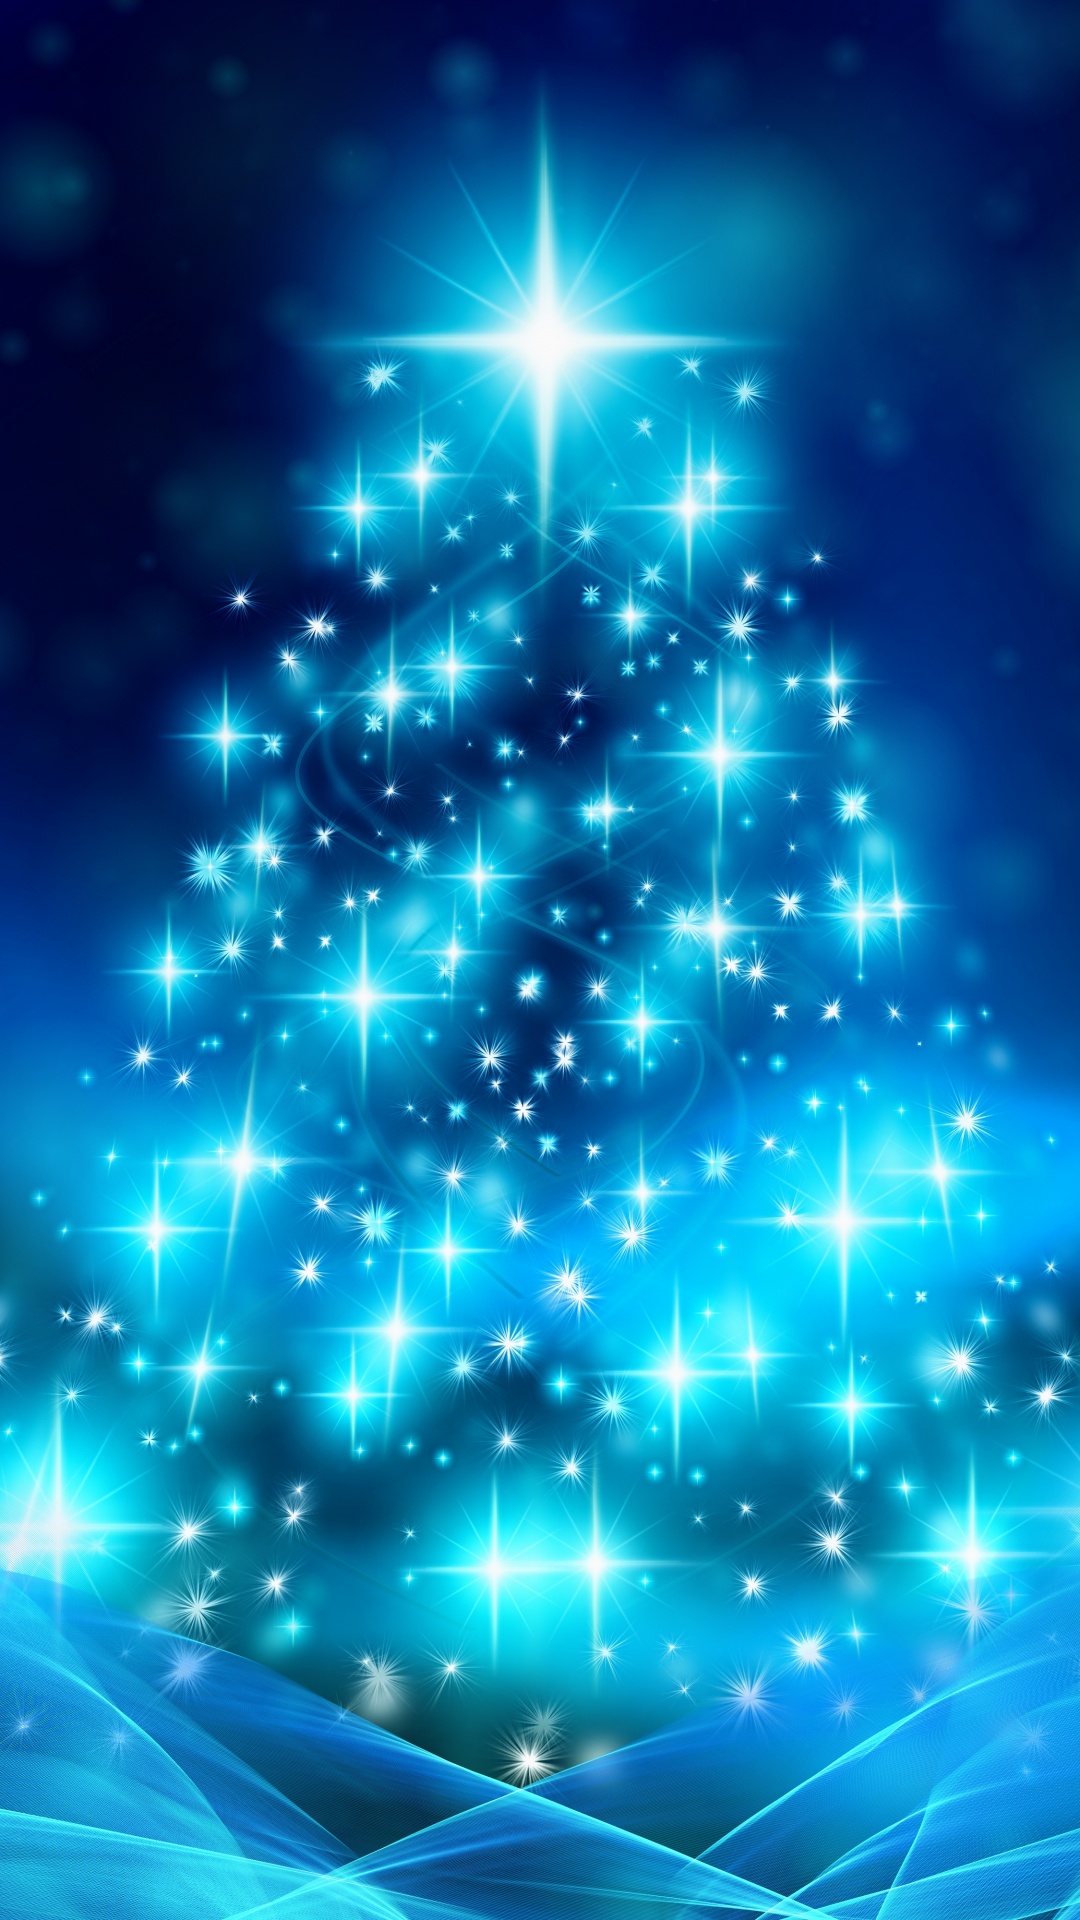 Le Jour De Noël, Arbre de Noël, Décoration de Noël, Blue, Animation. Wallpaper in 1080x1920 Resolution